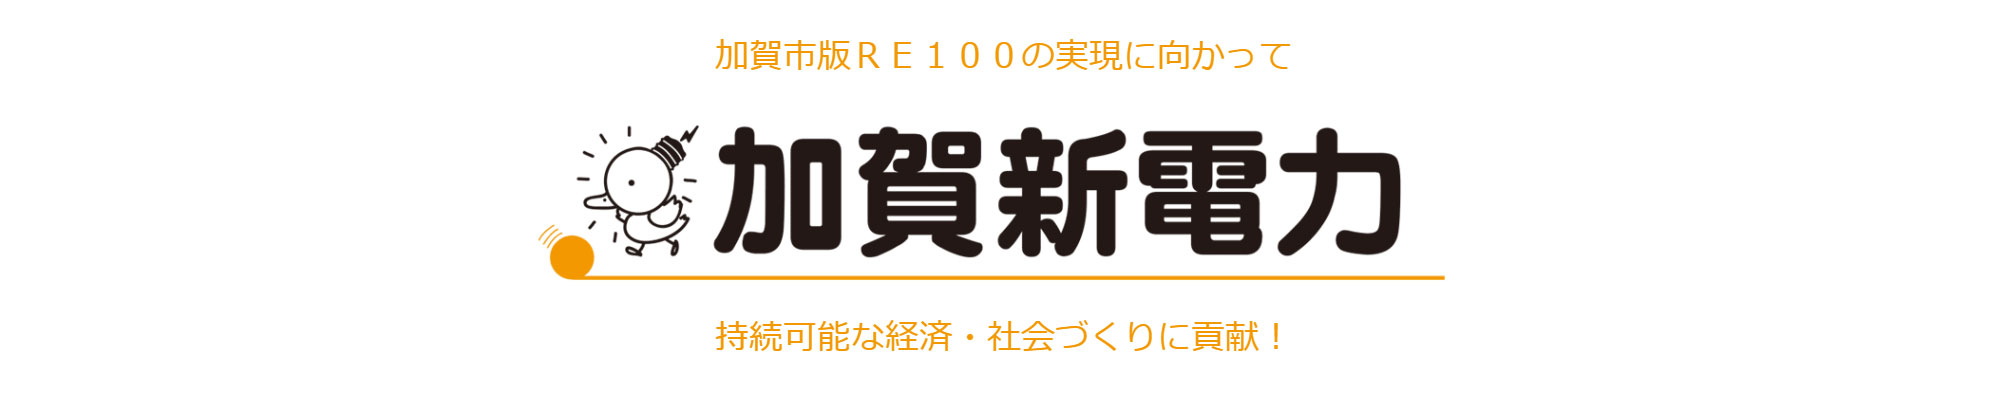 加賀新電力　加賀市版RE100の実現に向かって持続可能な経済・社会づくりに貢献